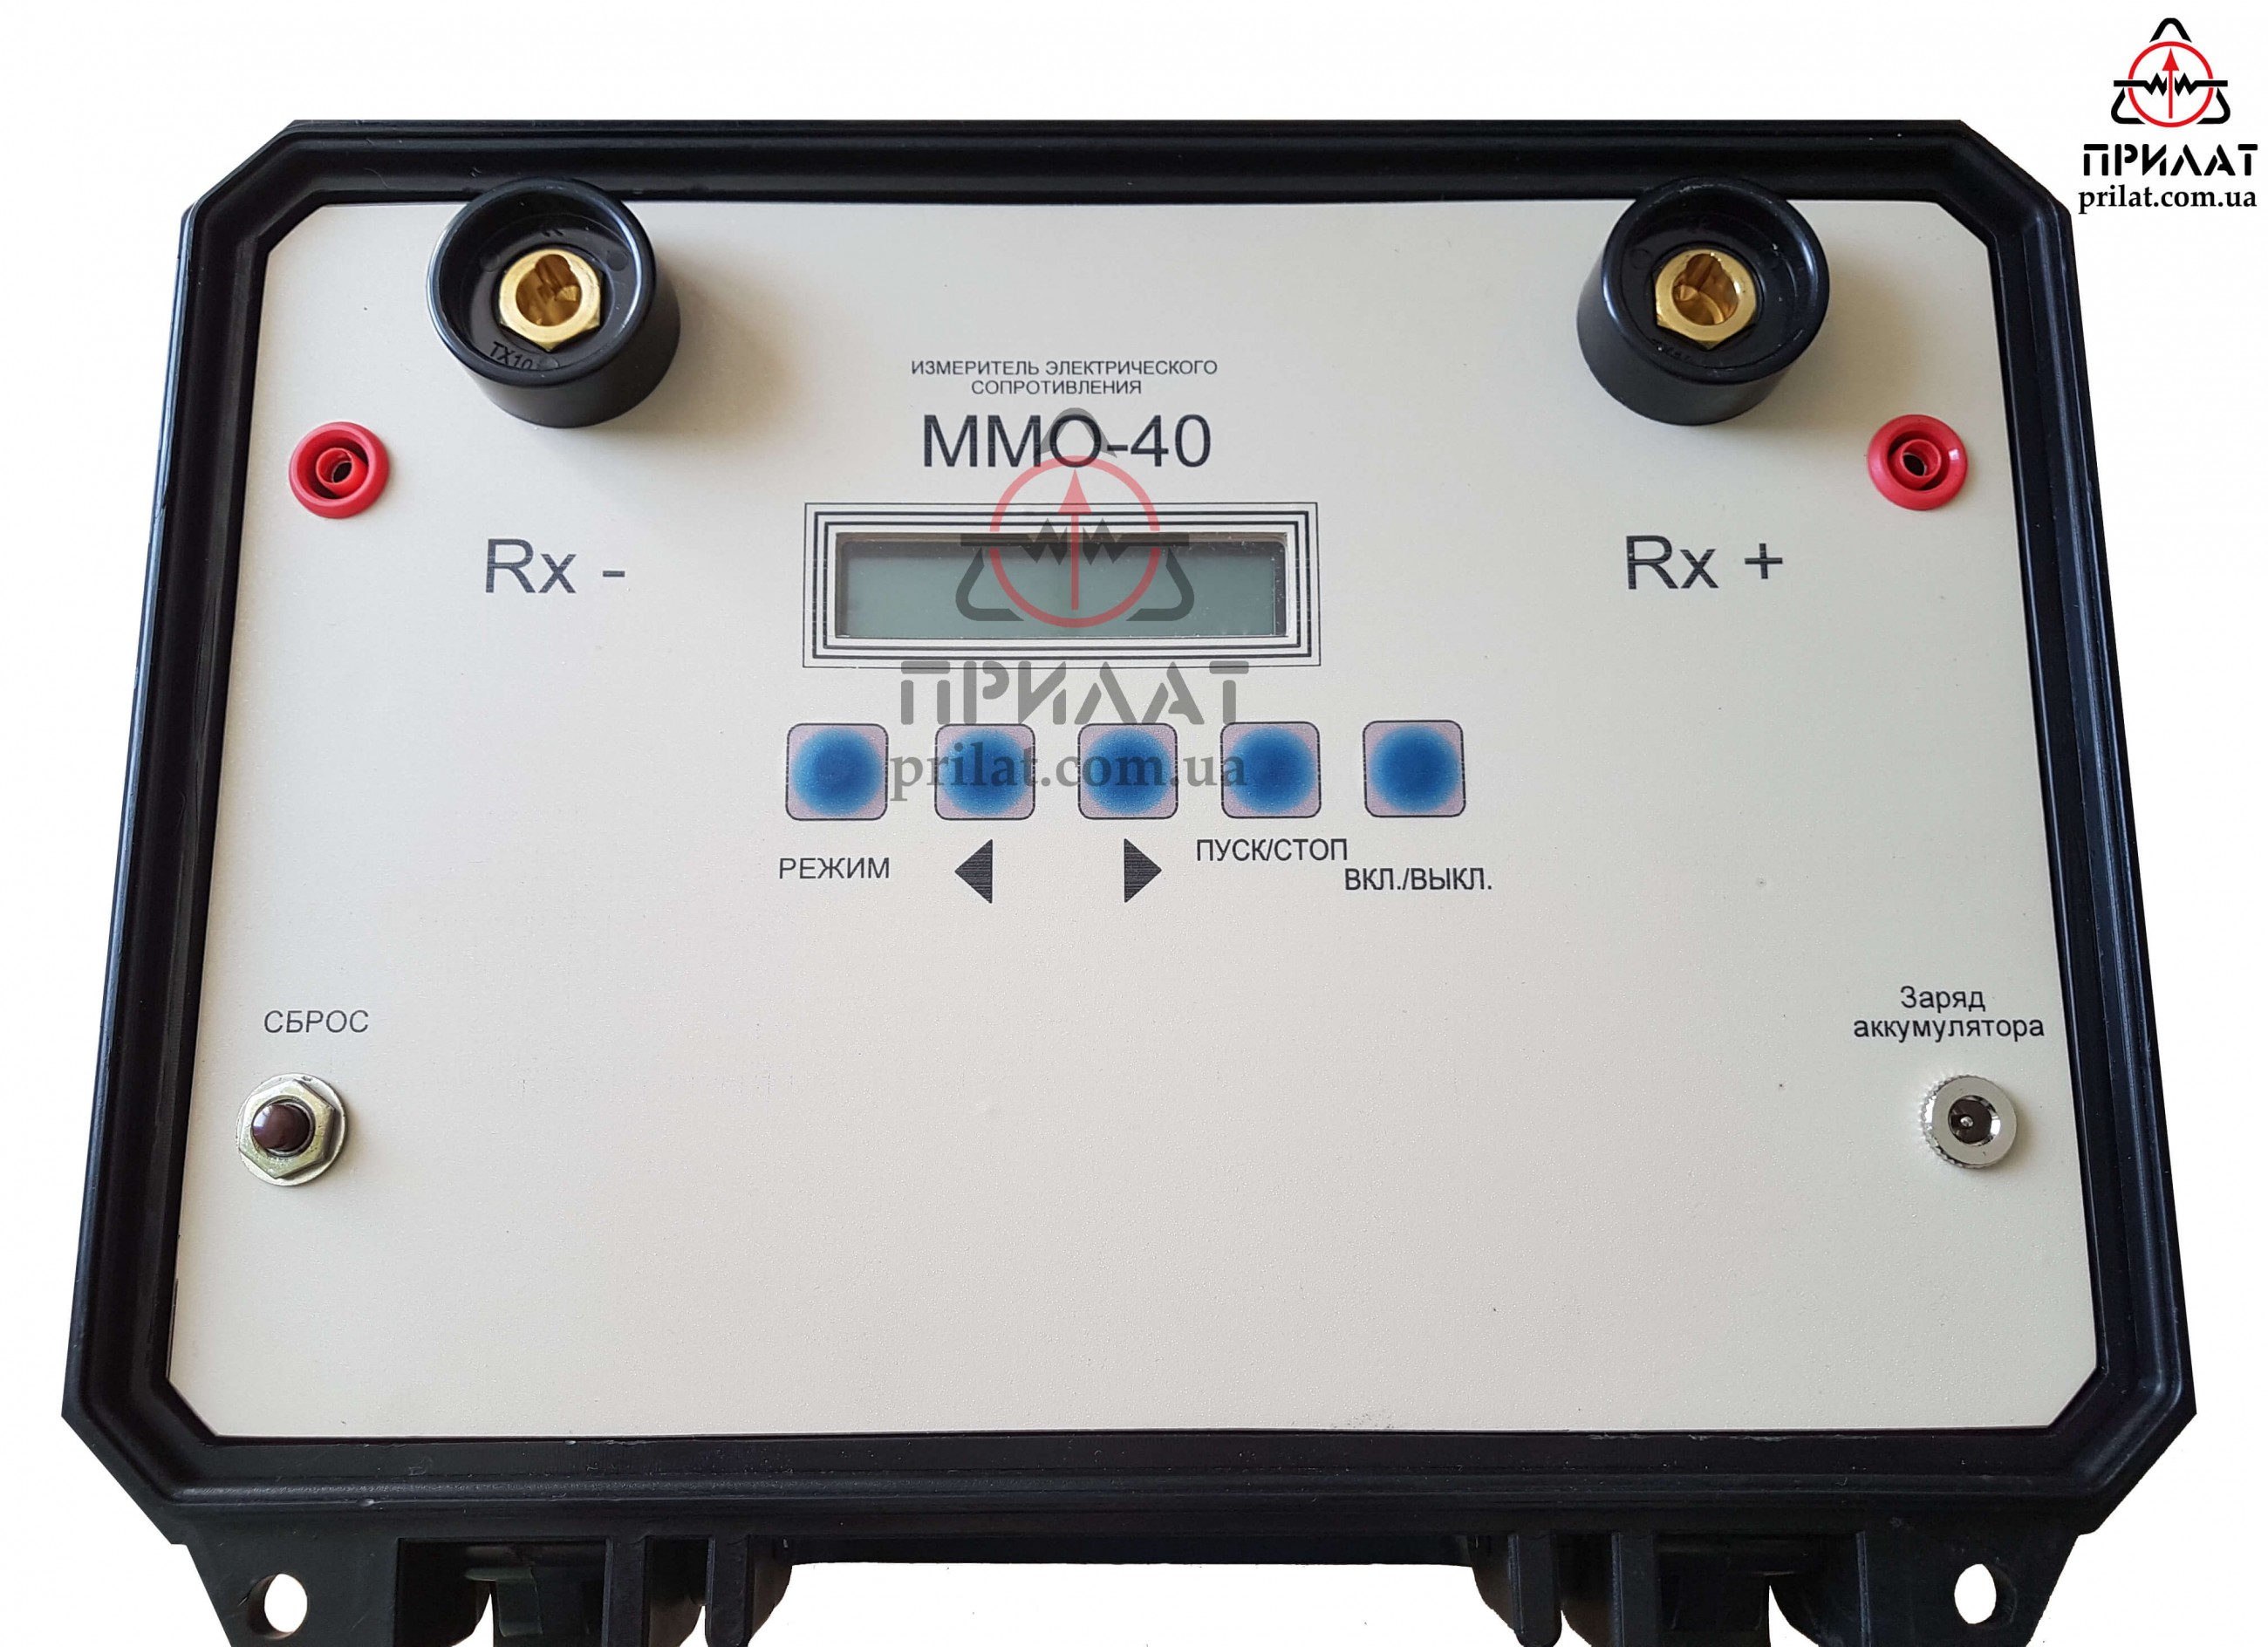 Измеритель электрического сопротивления ММО-40. Лицевая управления.